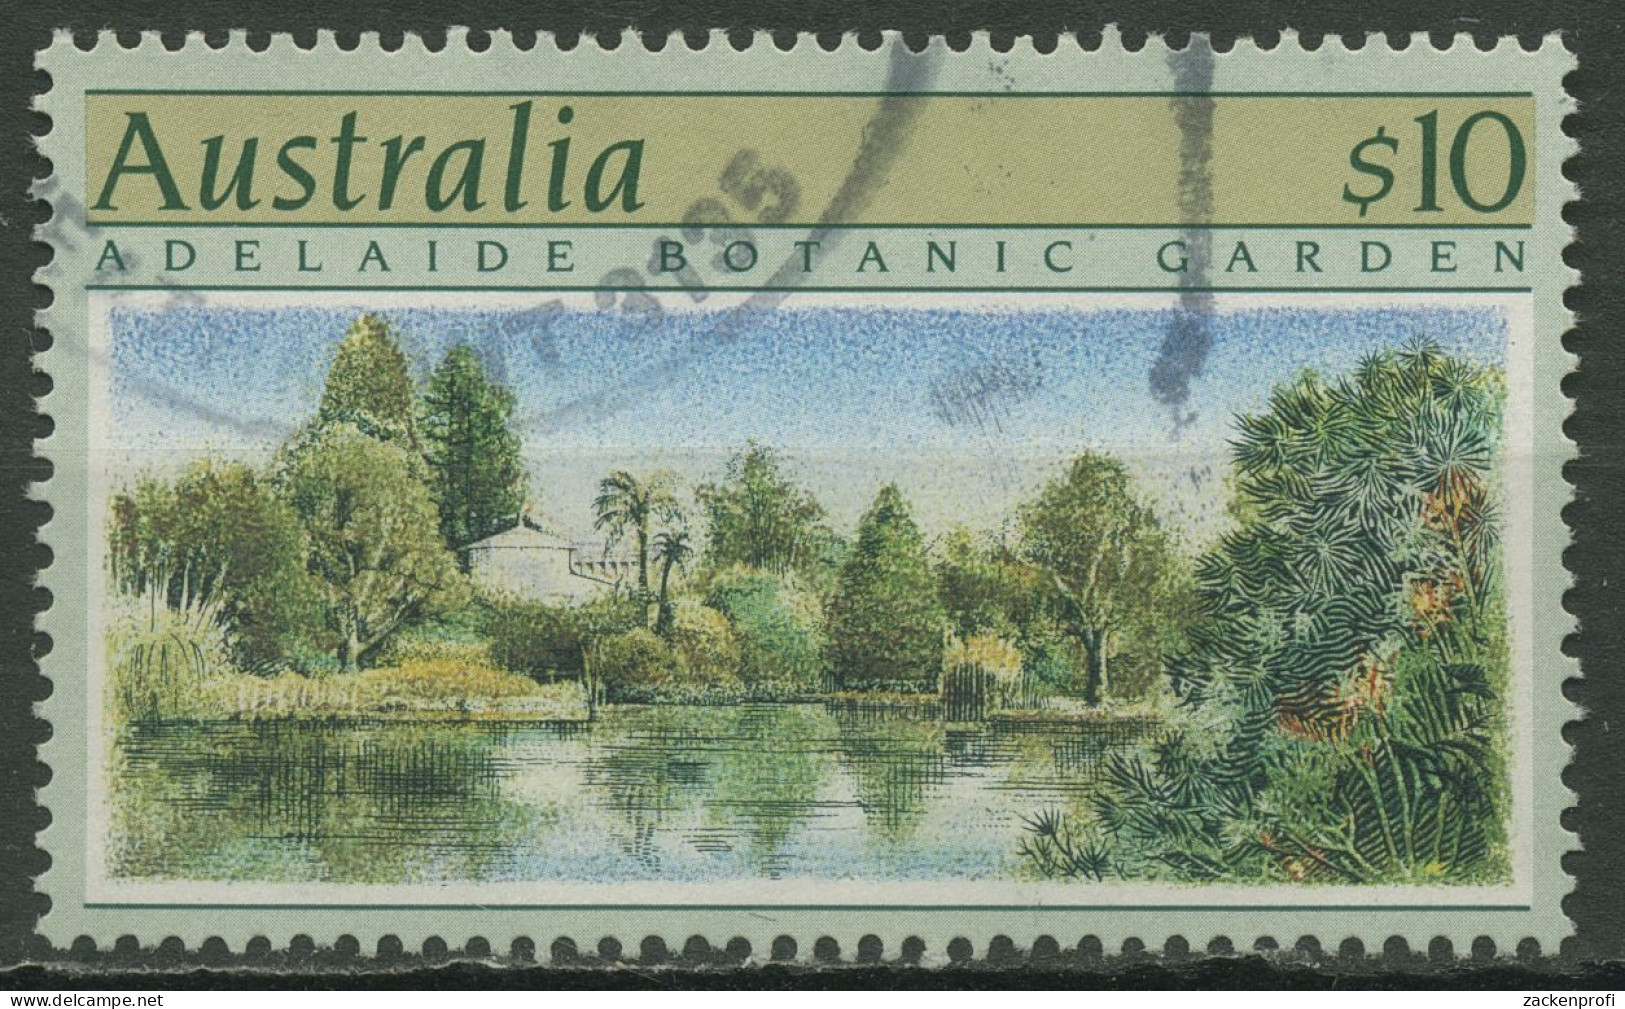 Australien 1989 Gartenanlagen Botanischer Garten Adelaide 1150 Gestempelt - Gebraucht